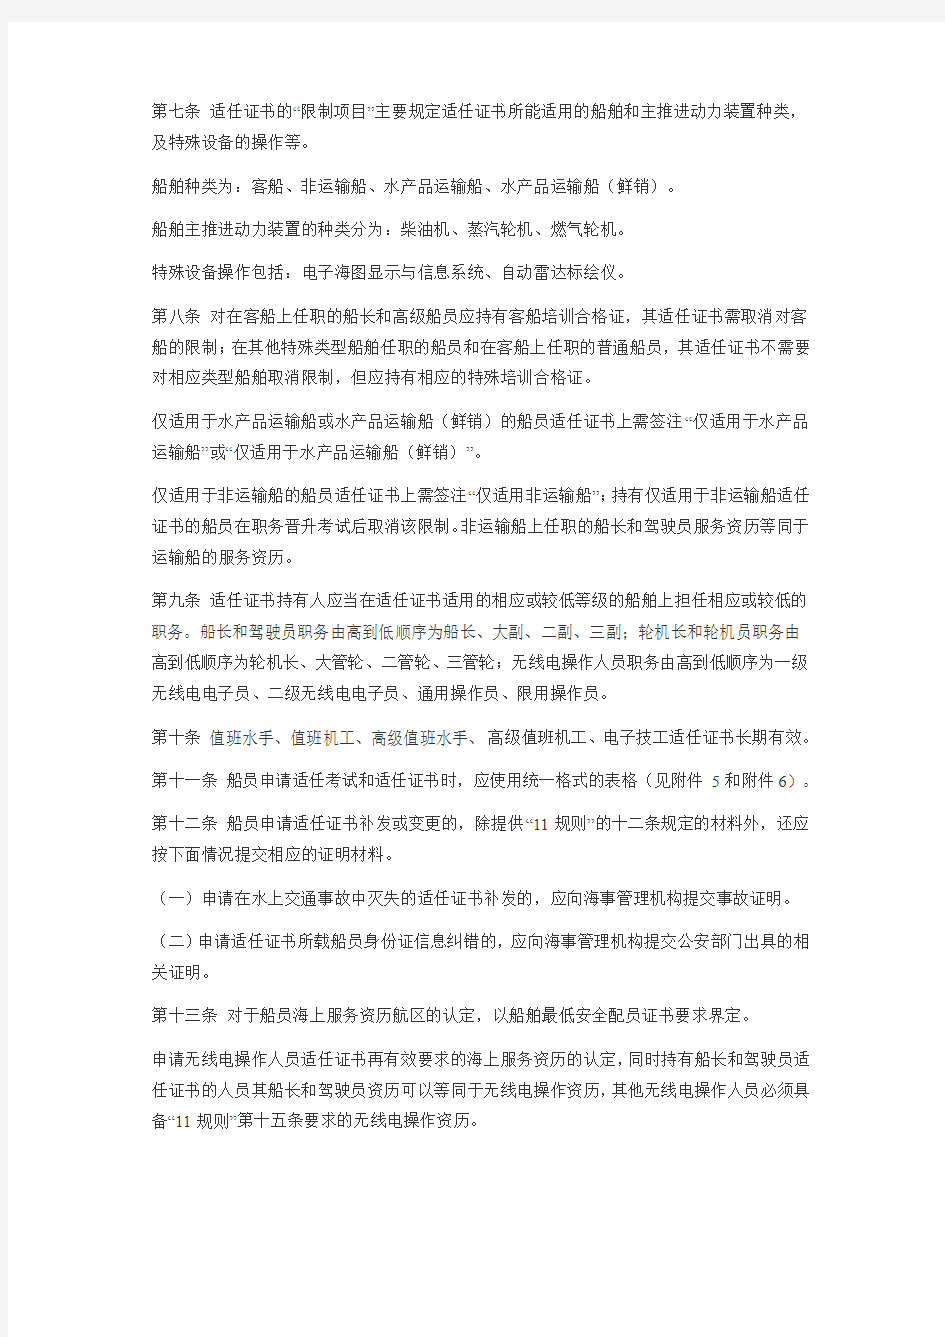 《中华人民共和国海船船员适任考试和发证规则》实施办法.